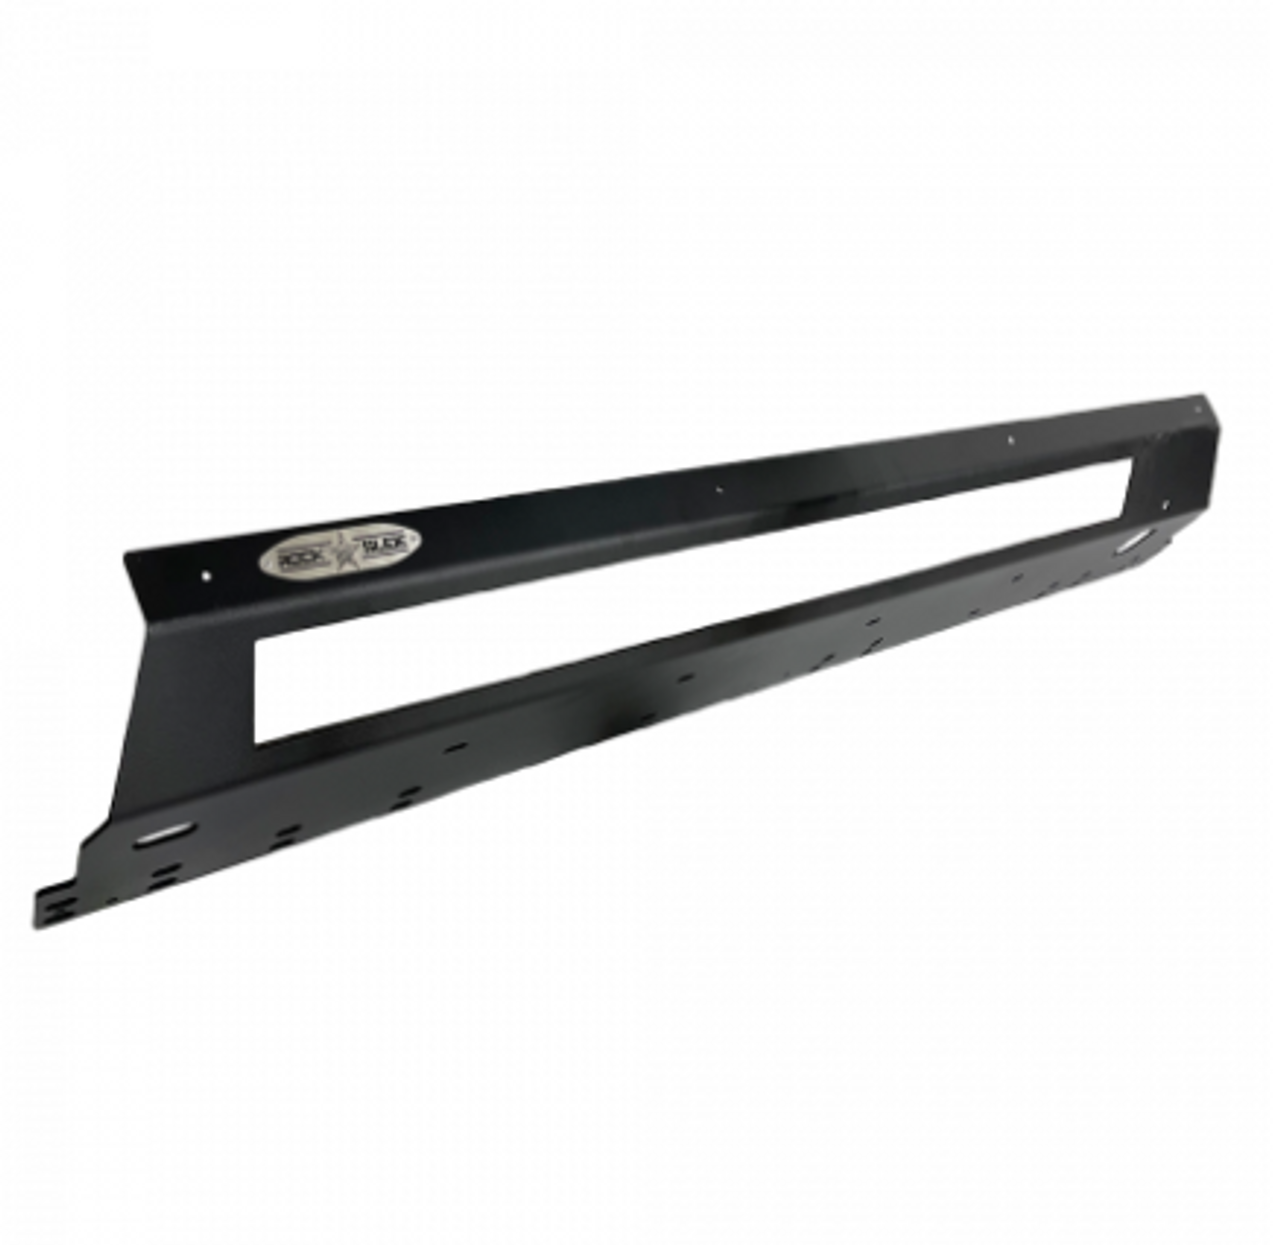 Rock Slide Engineering AX-SP-300-BR4 Step Slider Skid Plate for Ford Bronco 4 Door 2021+